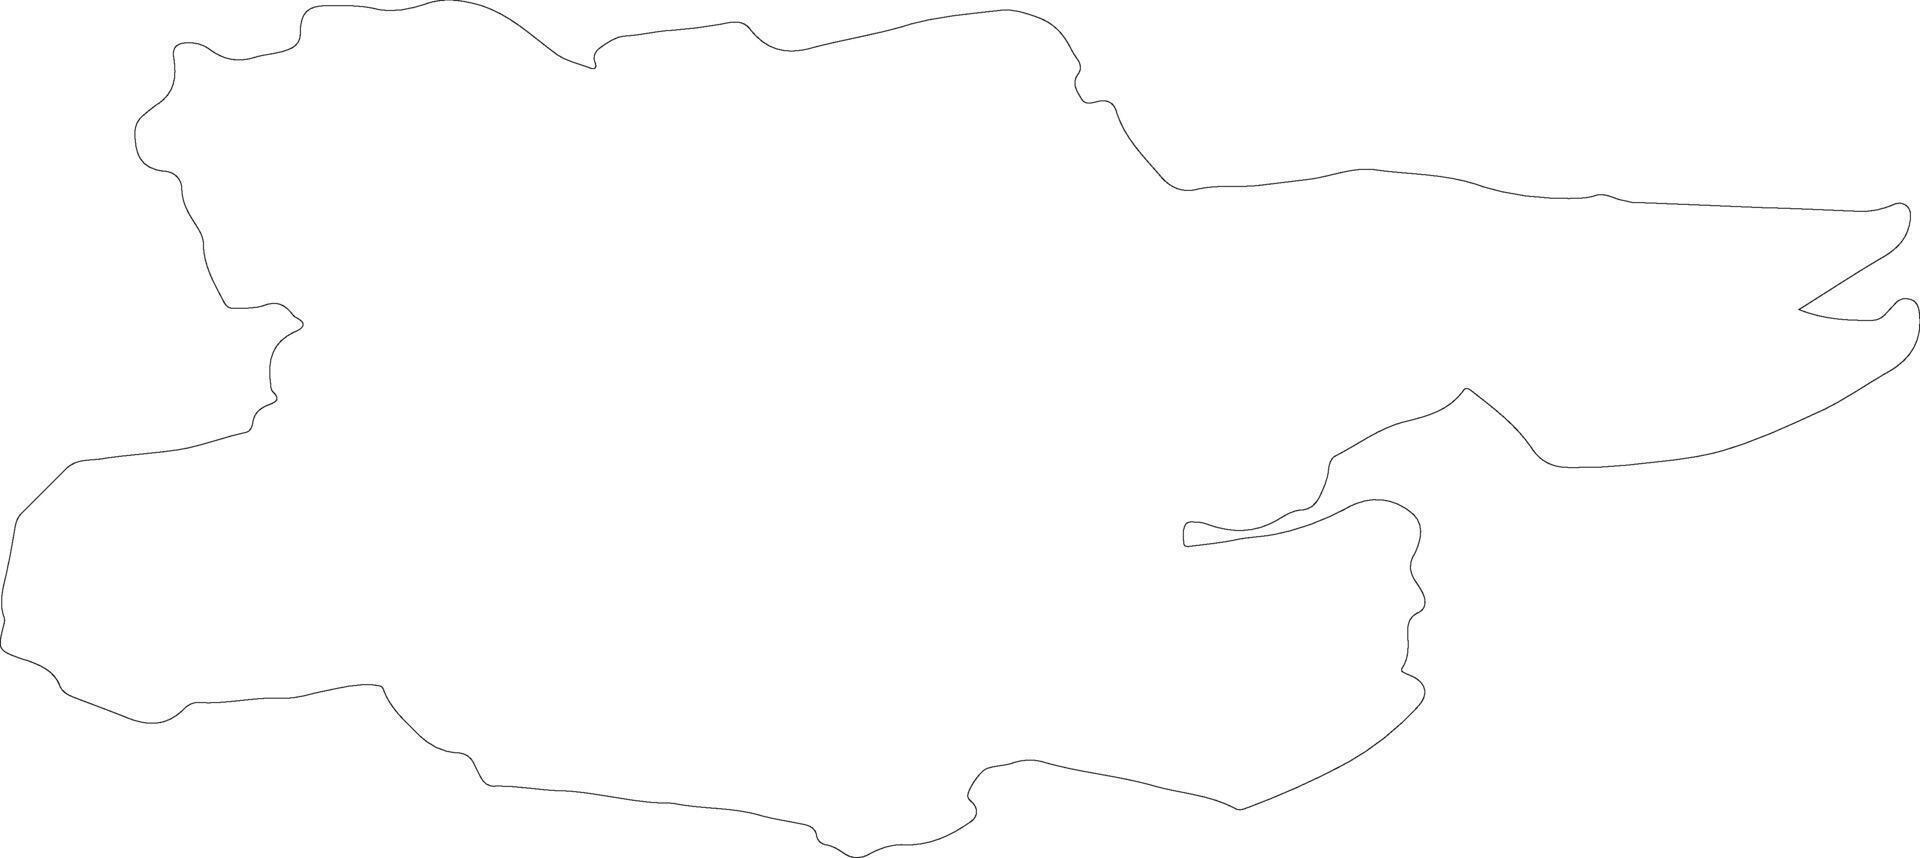 essex Verenigde koninkrijk schets kaart vector